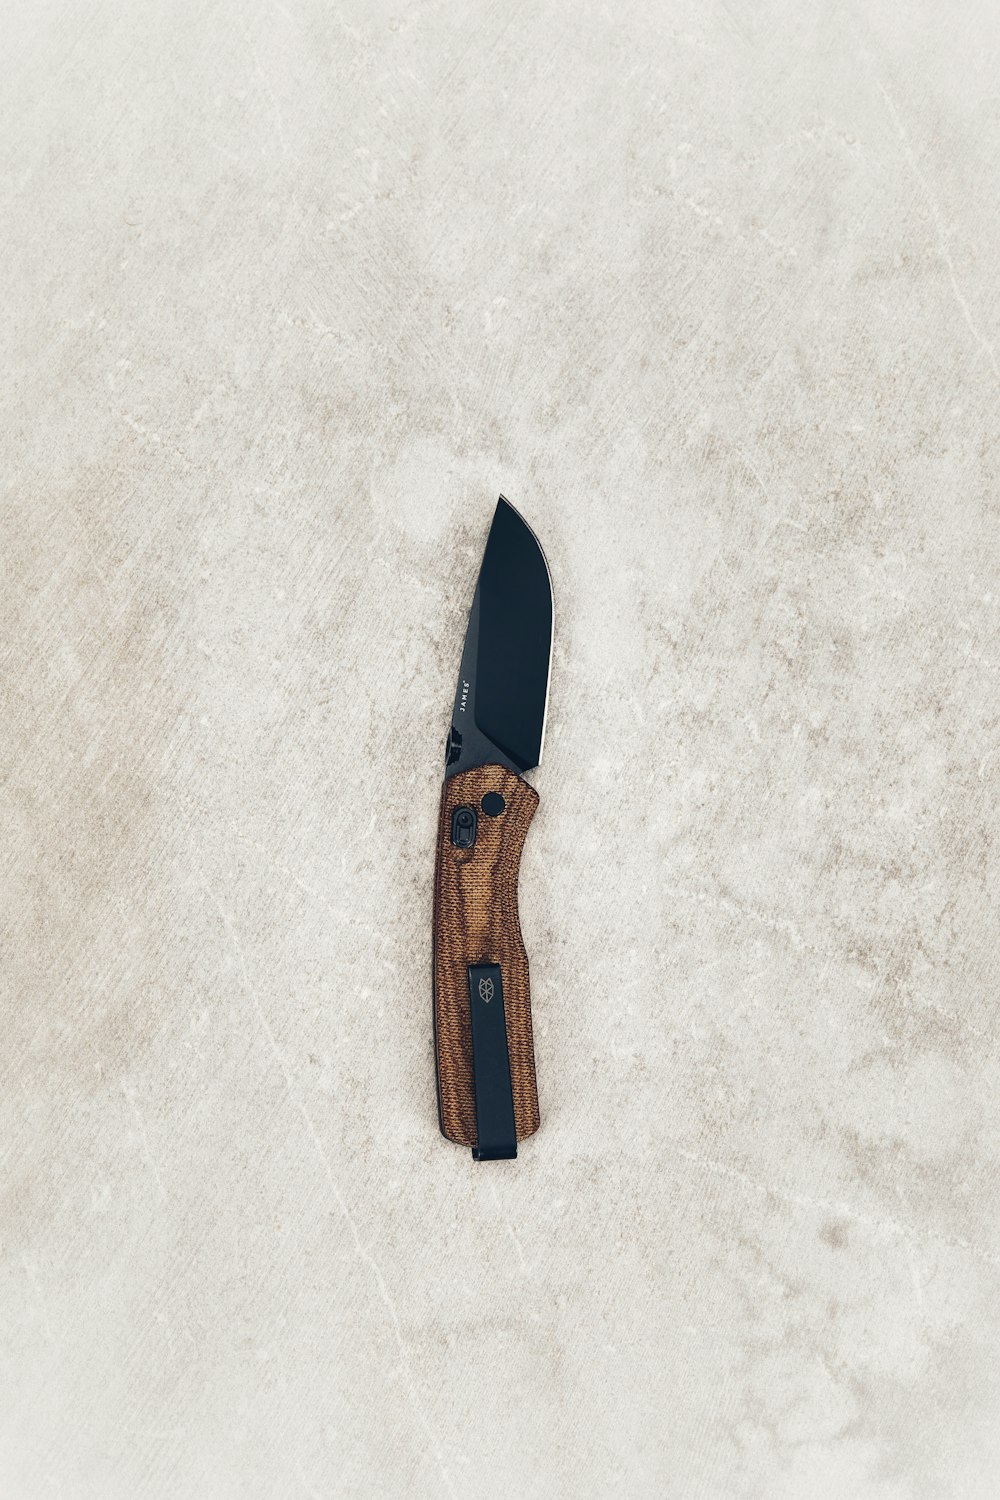 黒と茶色のポケットナイフ